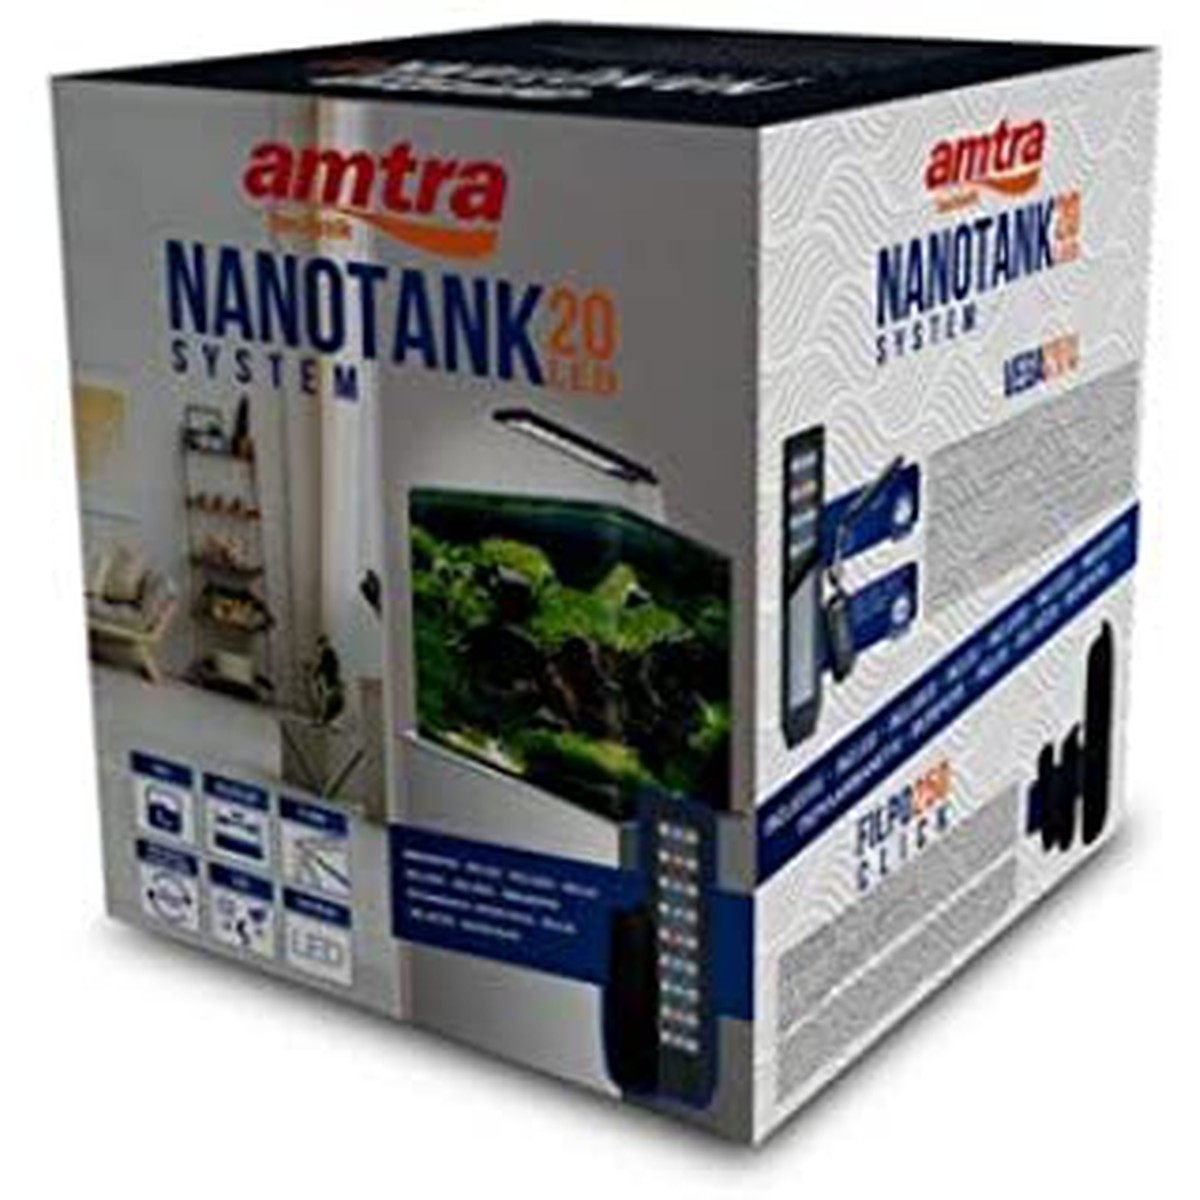   AMTRA NANOTANK SYSTEM 20  24x24x29.4cm